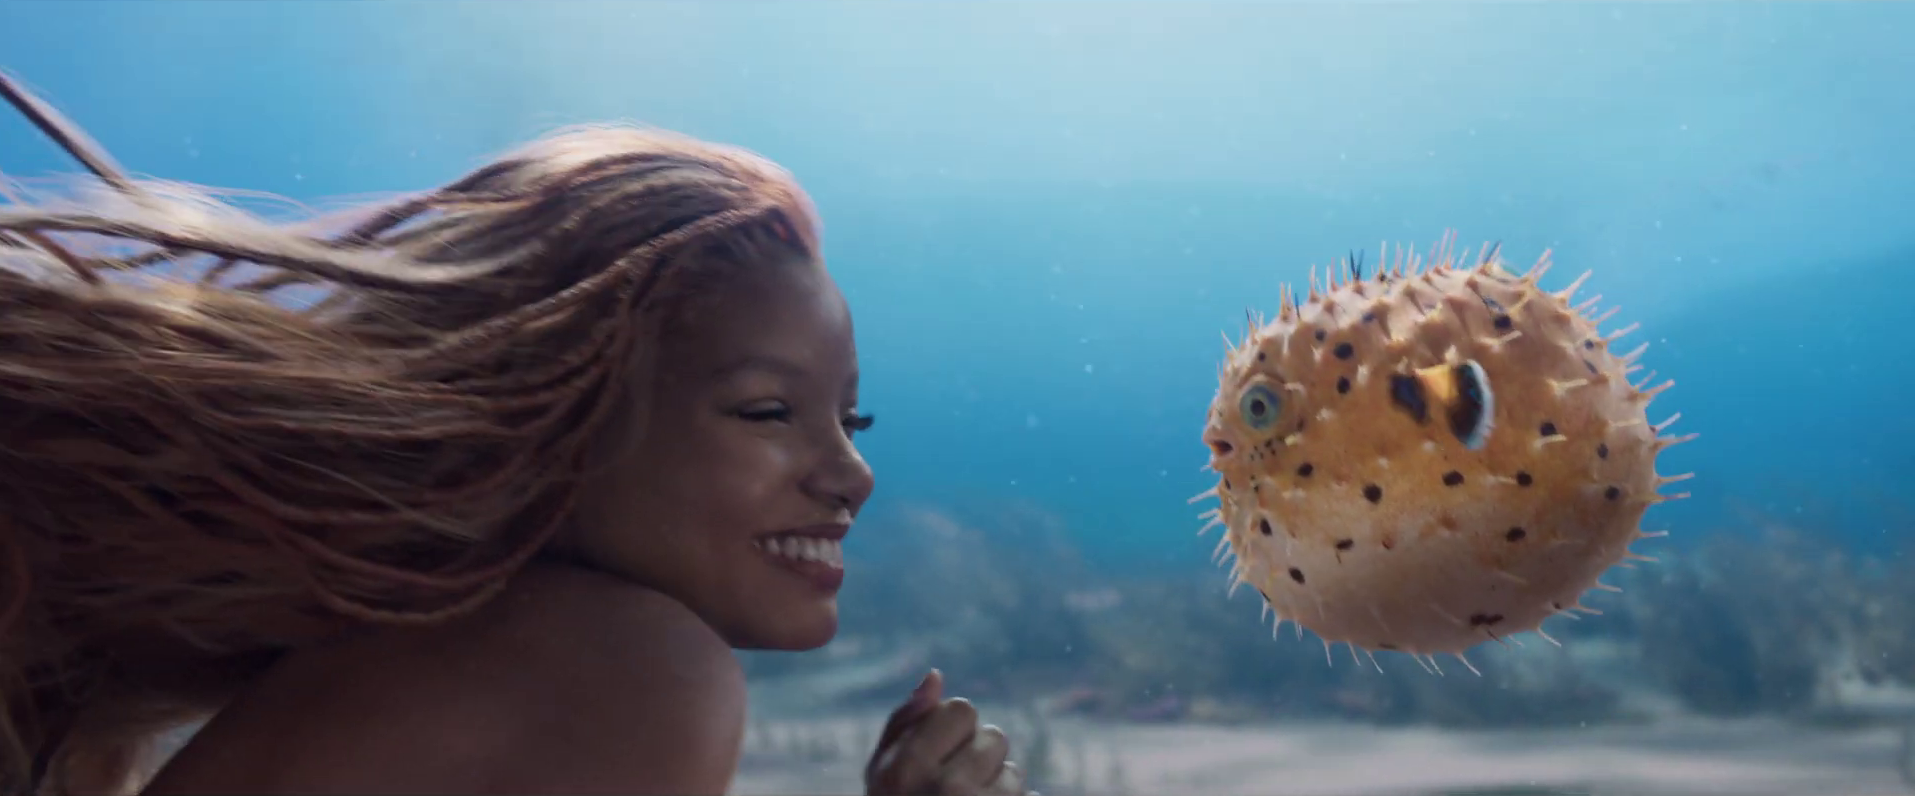 La Petite Sirène : le live action s'offre un nouveau teaser féérique